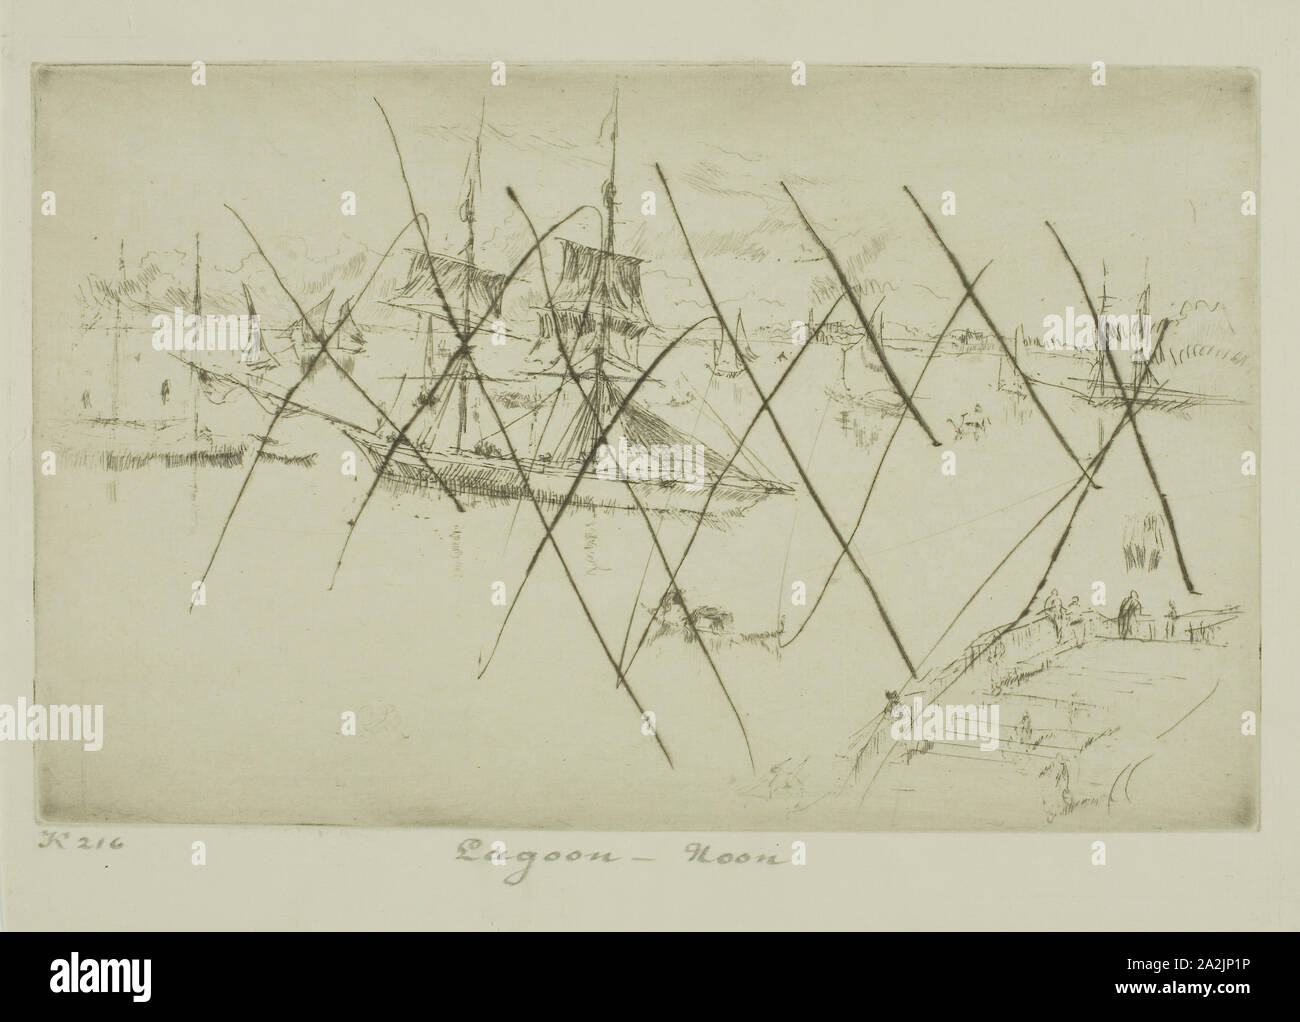 Lagoon, MIDI, 1879/80, James McNeill Whistler, Américain, 1834-1903, United States, pointe sèche, avec l'annulation, à peine, dans l'encre noire sur papier vergé ivoire, 136 x 201 mm (plaque), 170 x 227 mm (feuille Banque D'Images